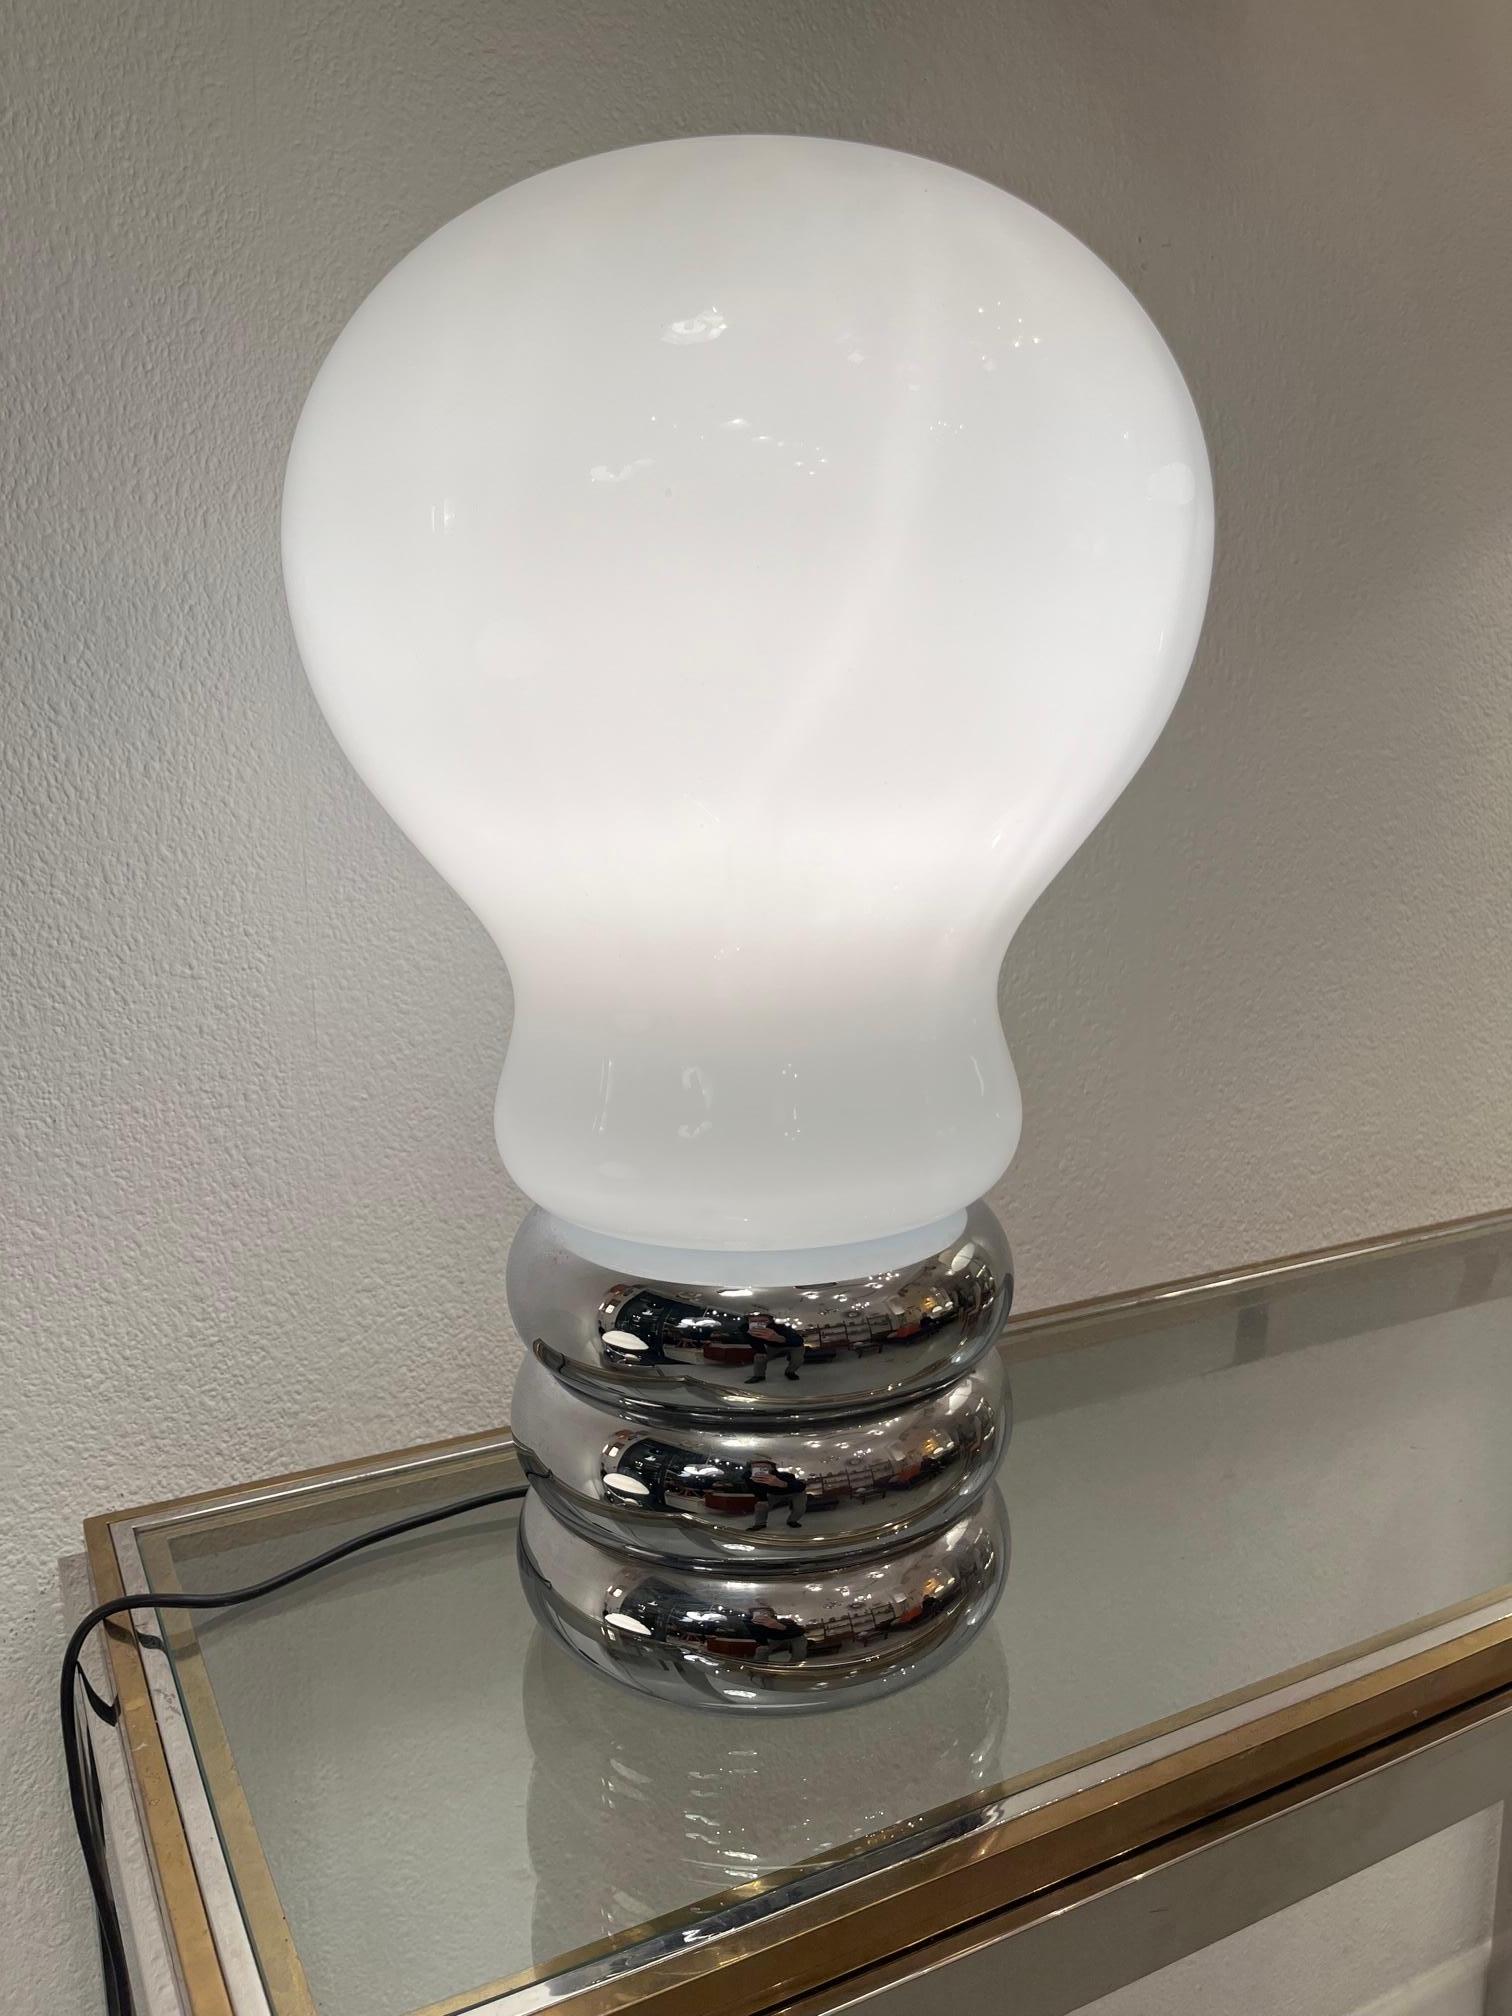 Vintage early Giant Bulb table lamp by Ingo Maurer produced by DesignM, Germany ca. 1966
Verre opale blanc et base en métal chromé. Label du fabricant. Électrification d'origine.
Très bon état.
H 55 x D 33 cm
Il n'est plus en production.
 